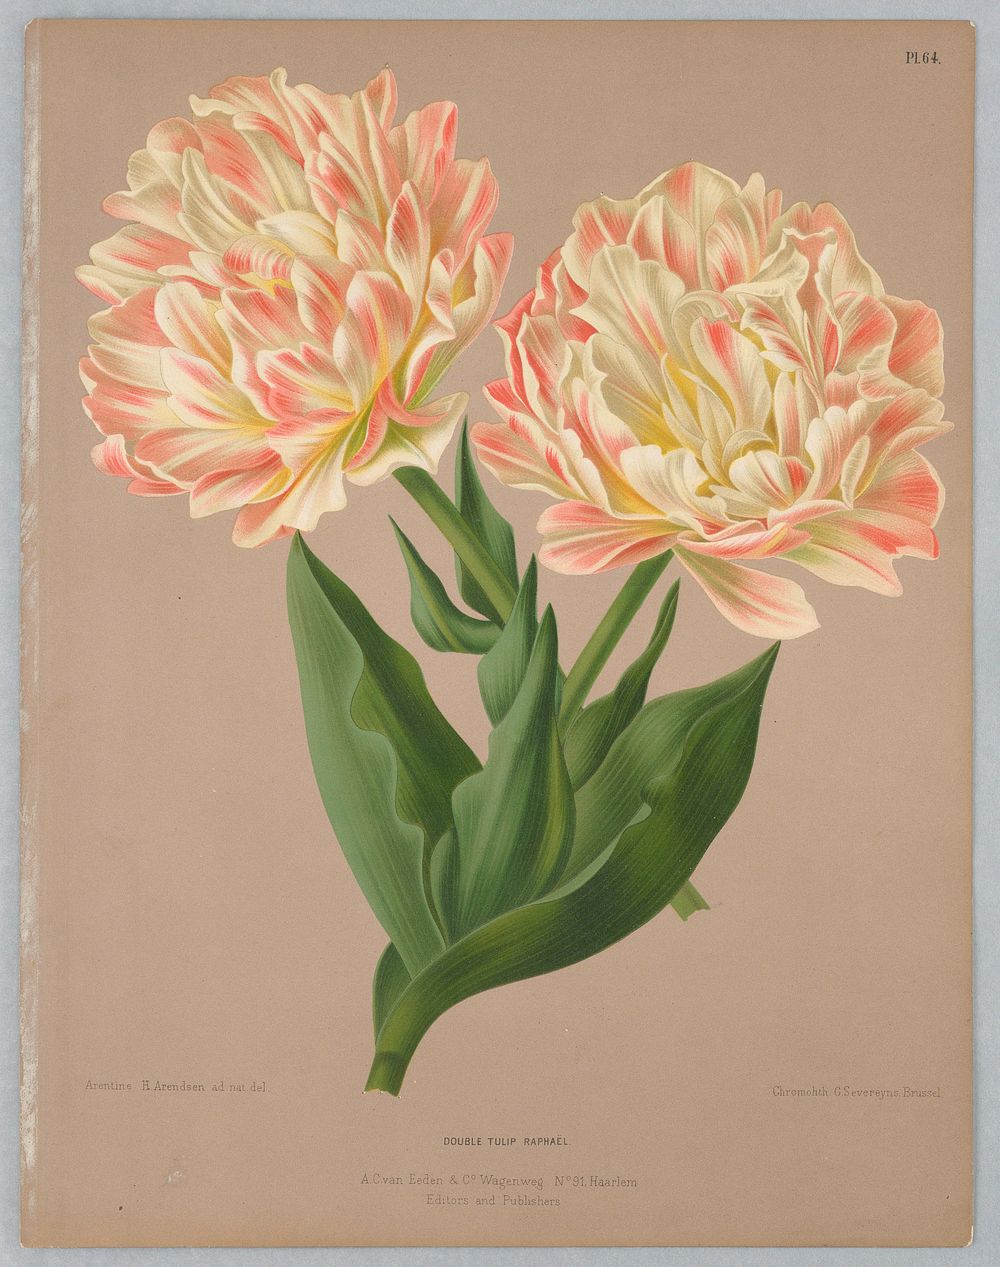 Double Tulip Raphaël, Plate 64 from A. C. Van Eeden's "Flora of Haarlem"